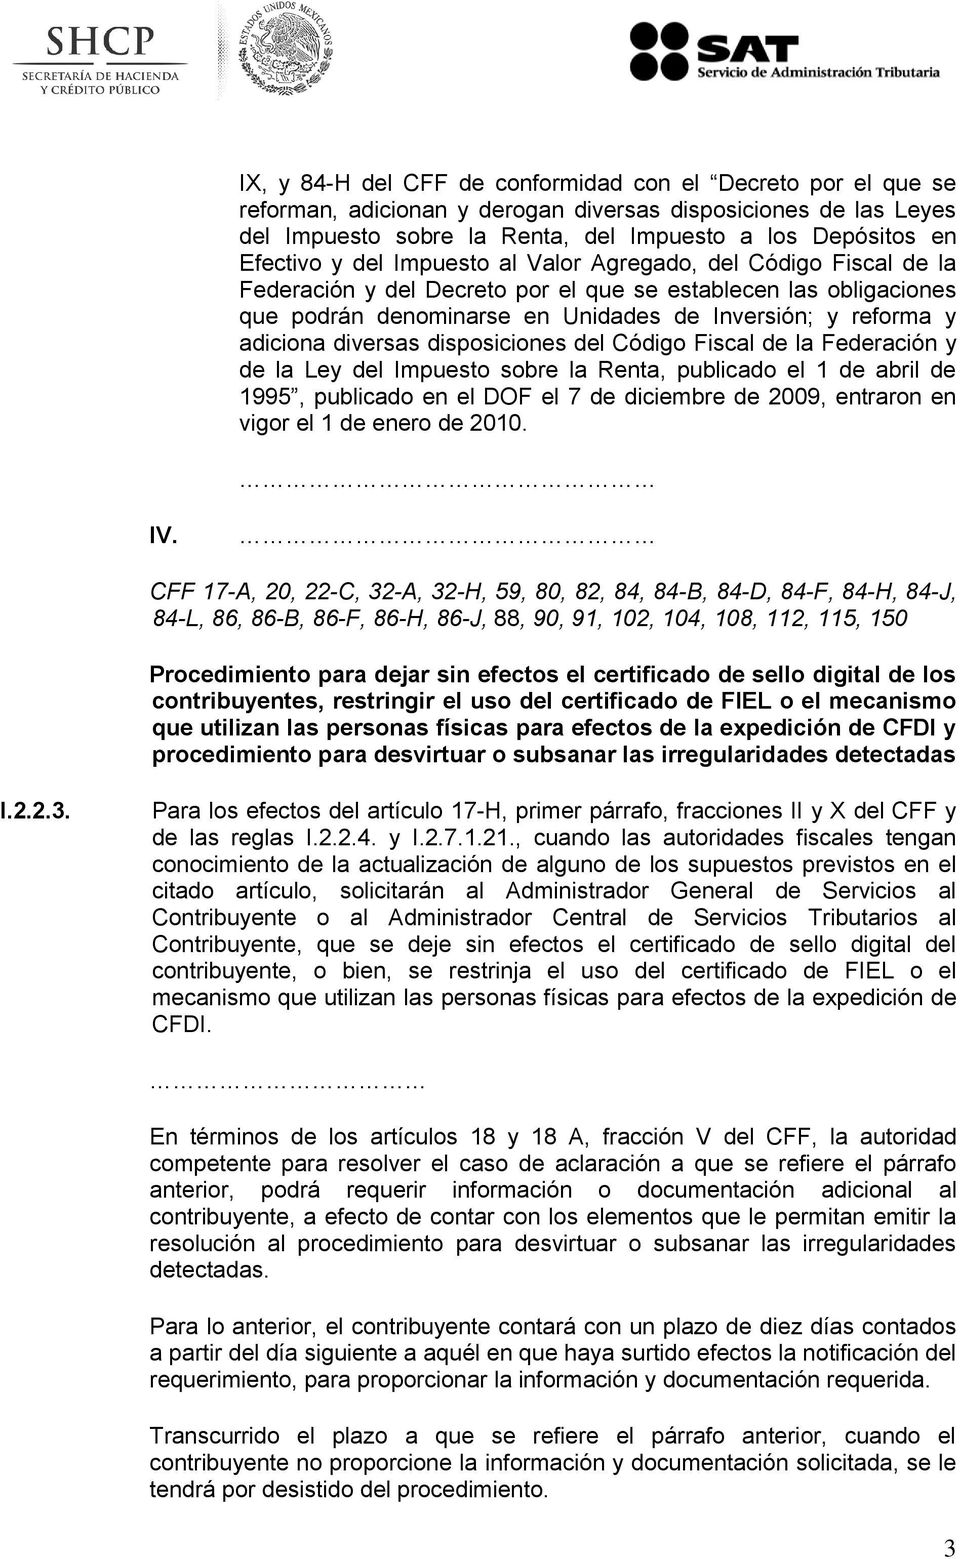 diversas disposiciones del Código Fiscal de la Federación y de la Ley del Impuesto sobre la Renta, publicado el 1 de abril de 1995, publicado en el DOF el 7 de diciembre de 2009, entraron en vigor el